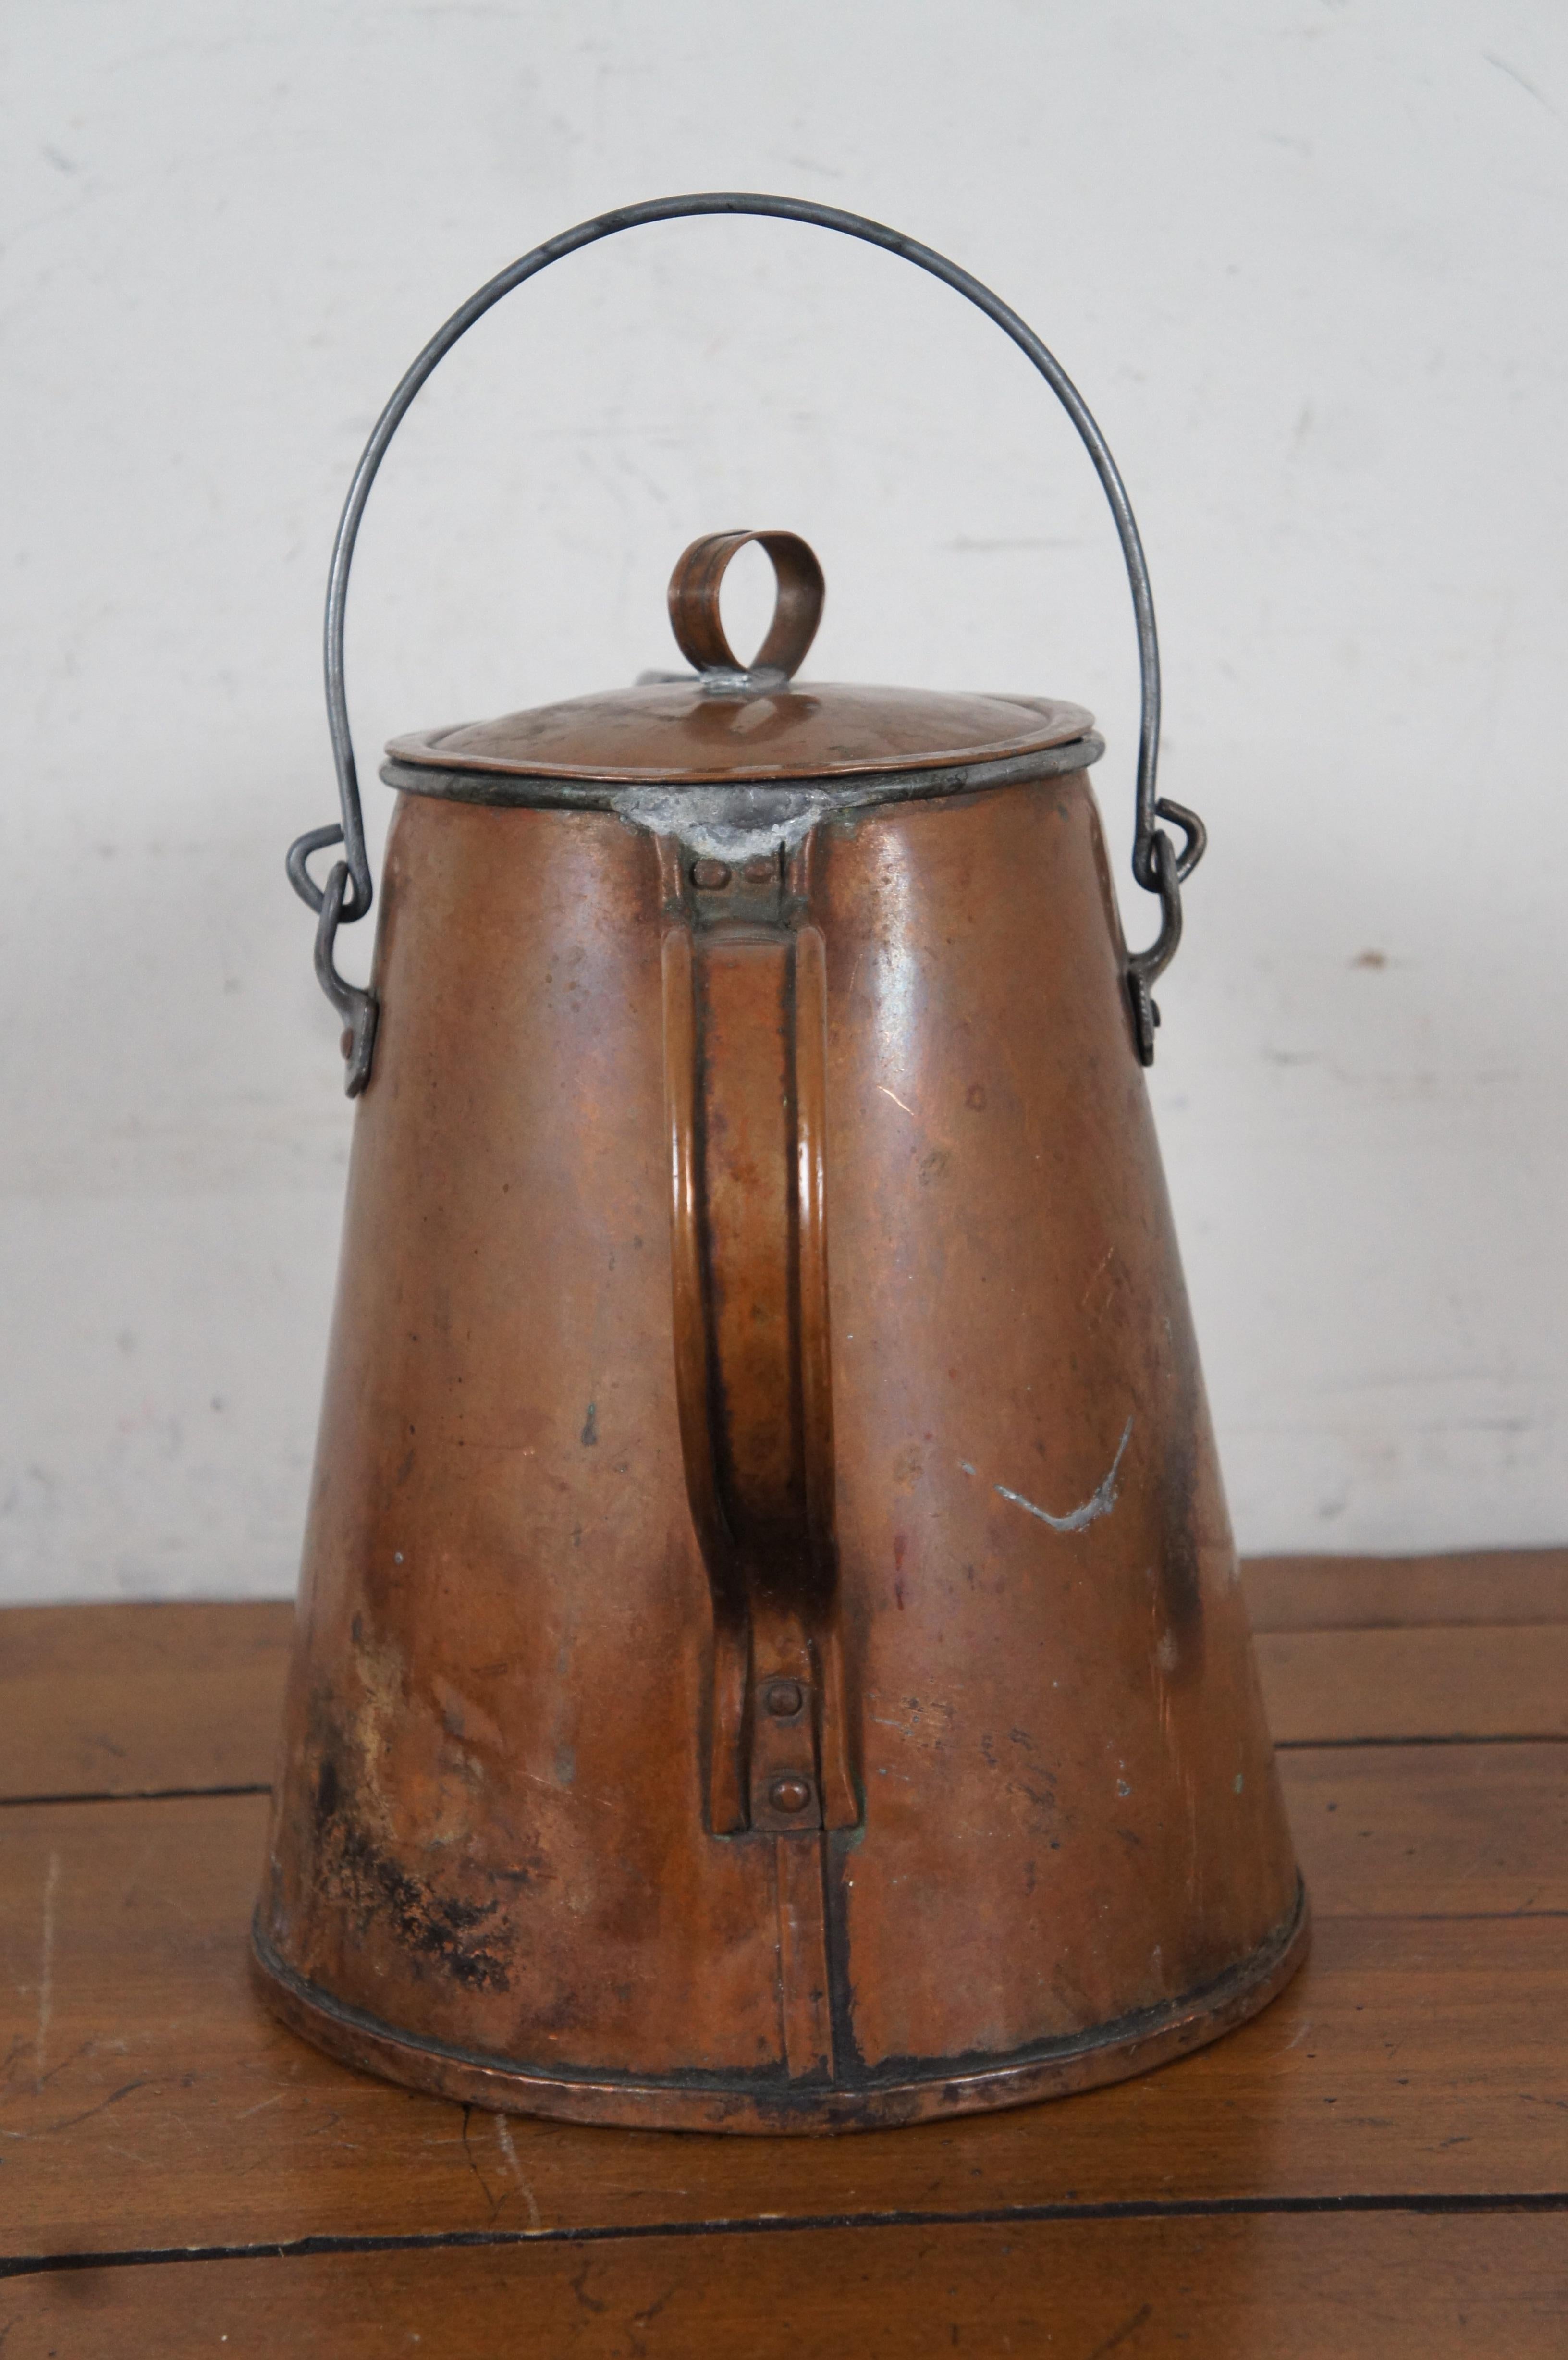 Cuivre Primitive Antique Copper Tea Pot Coffee Kettle Cowboy Farmhouse Teapot 11